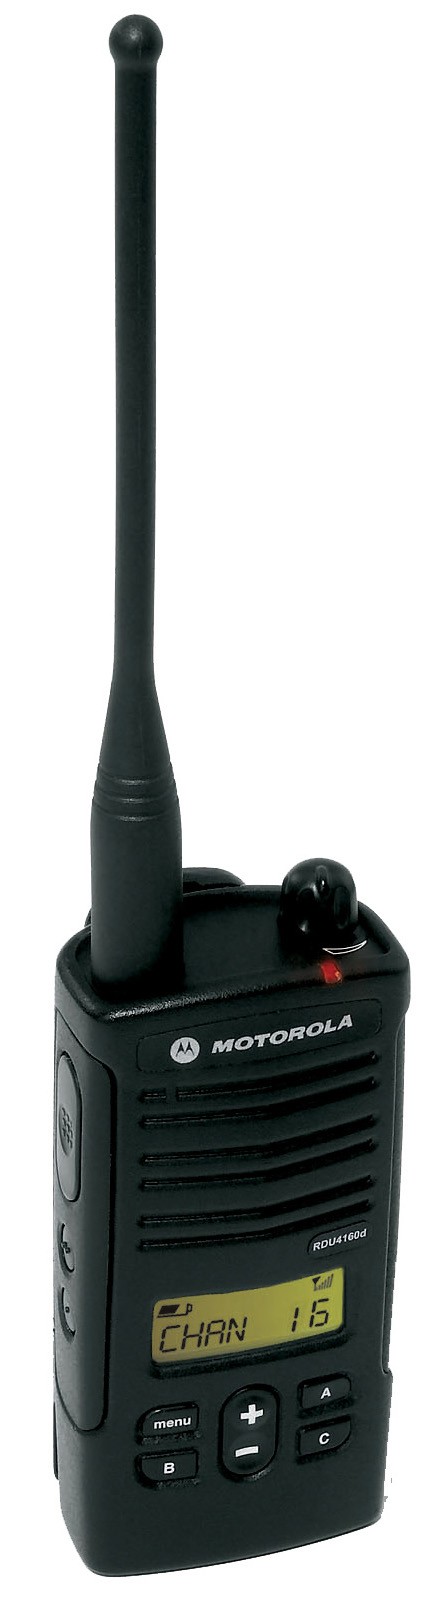 Motorola RDU4160d UHF Portable Radio